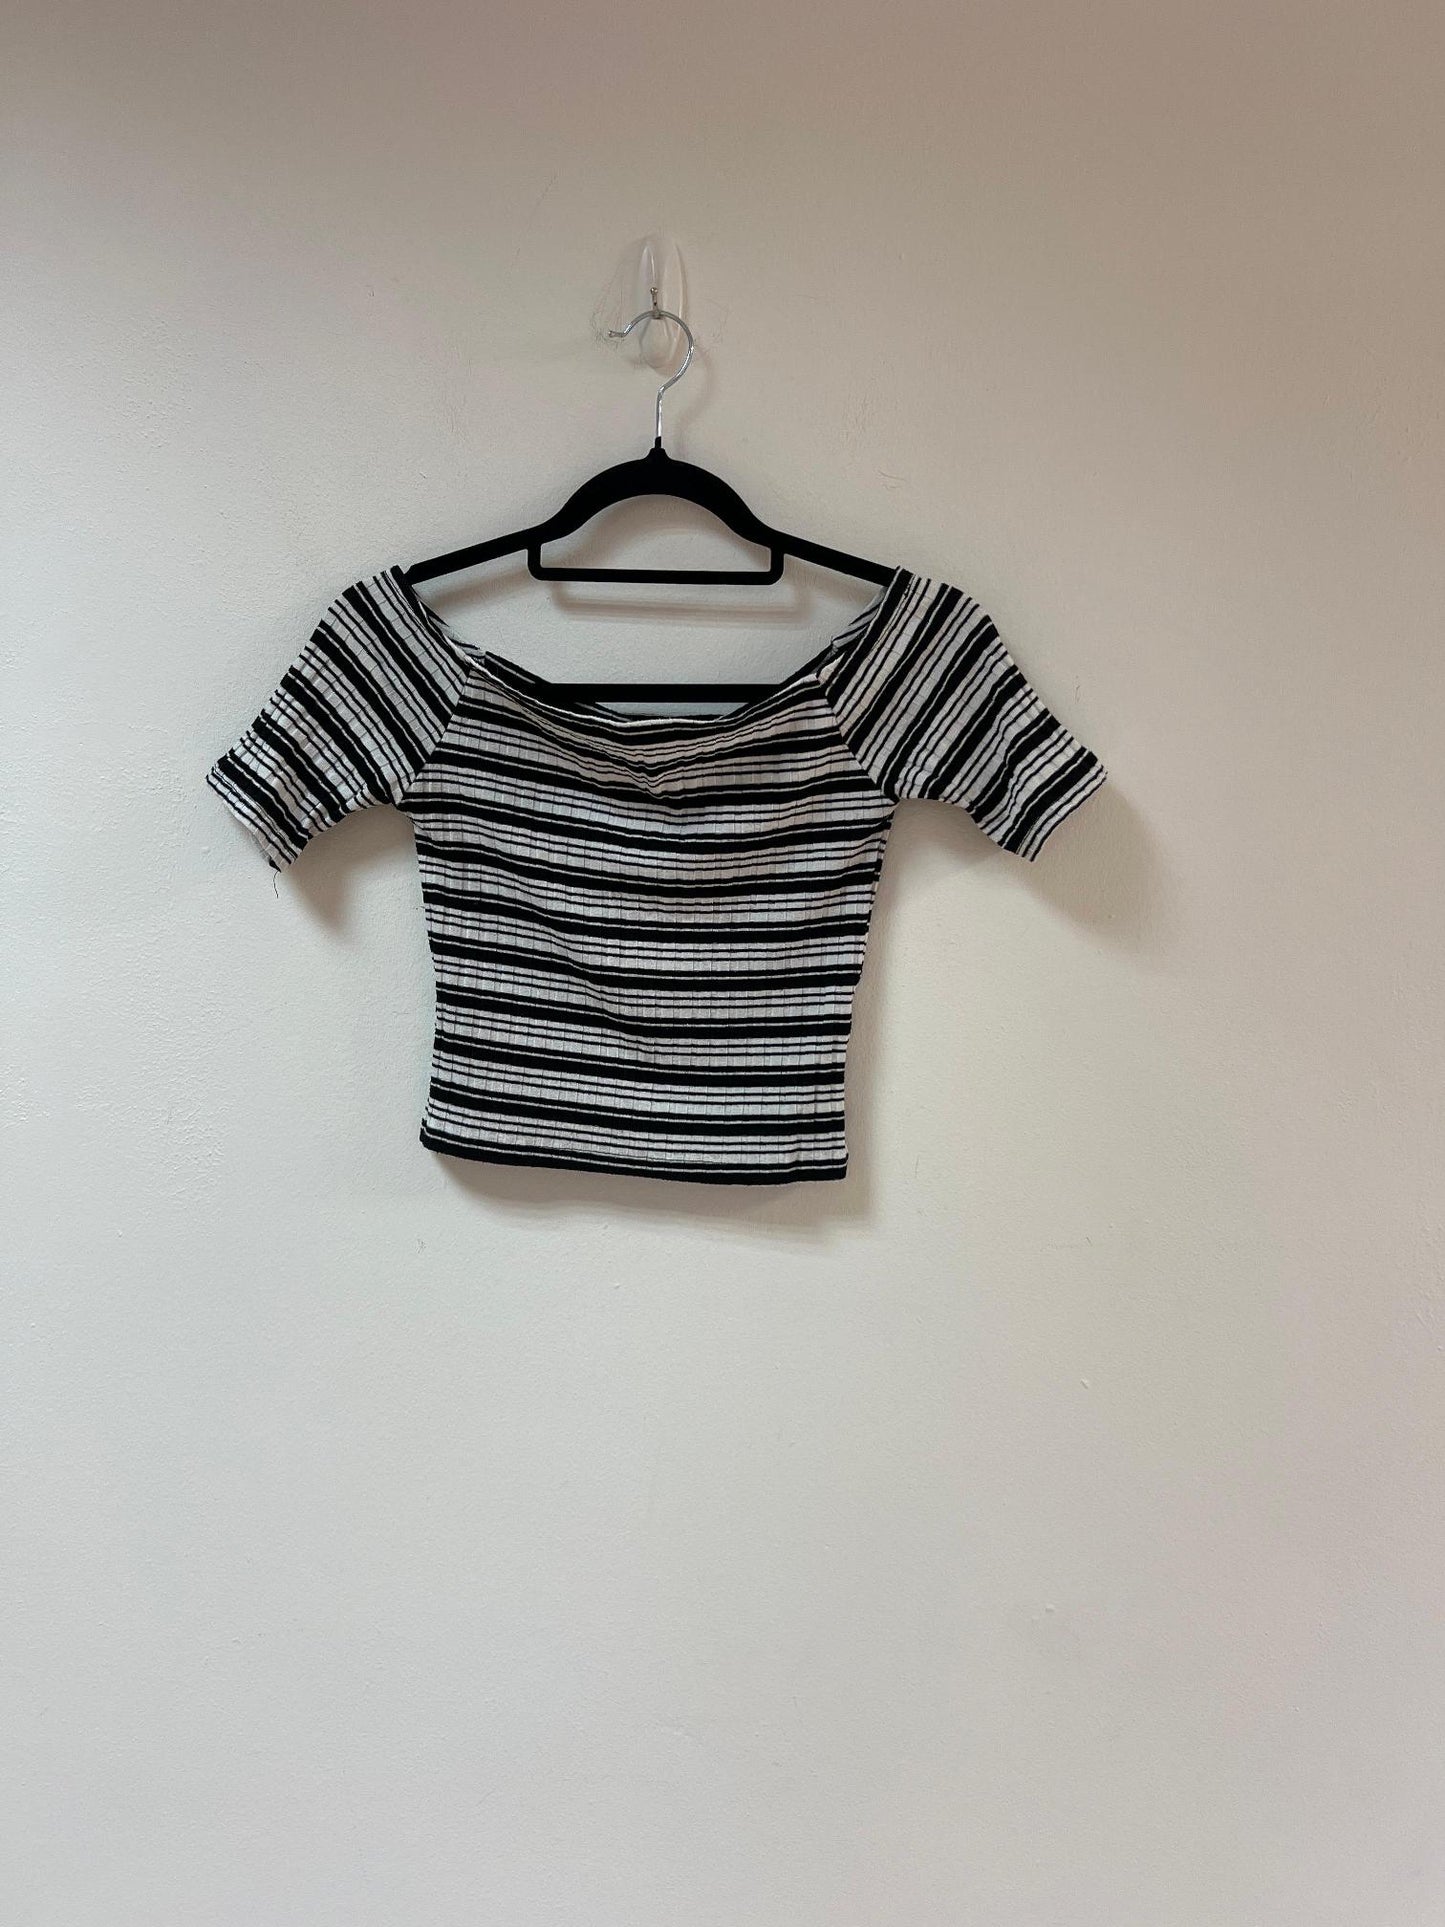 Black & white striped off shoulder top, Primark, Size 10 (Elastane, Polyester, Viscose)